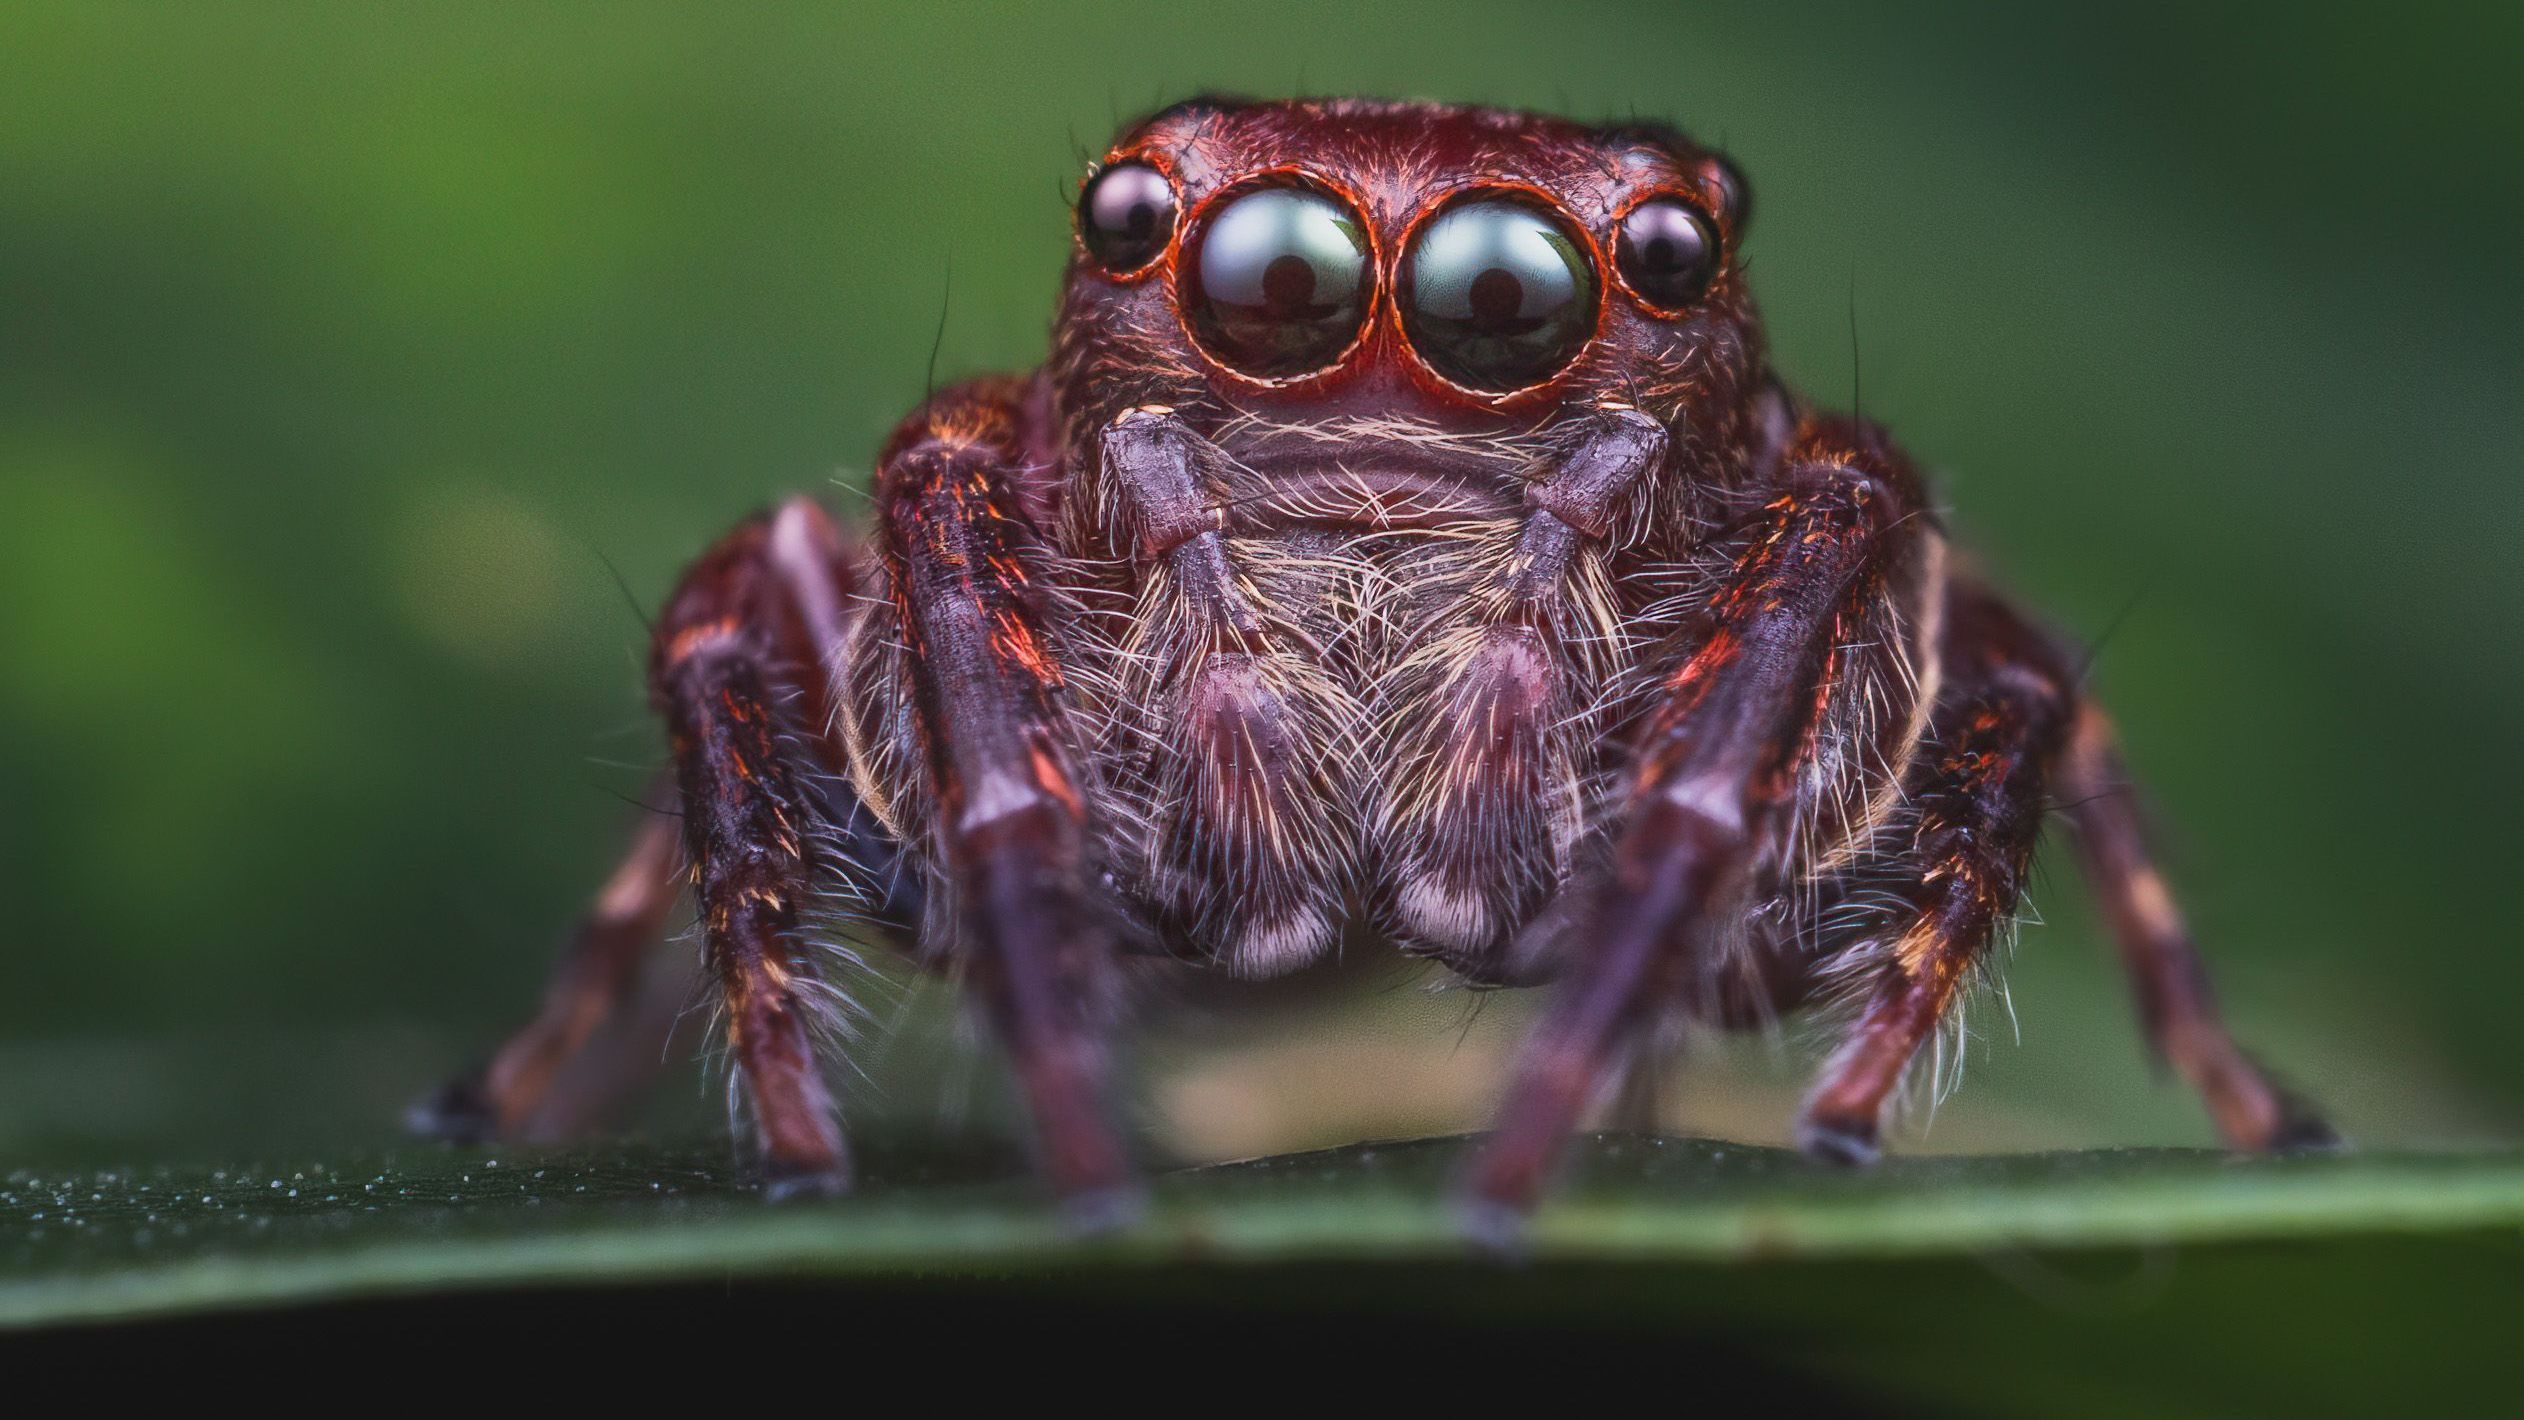 Auch viele Springspinnen (Bild) haben nur sechs Augen. Ihre Hauptaugen sind besonders groß, was sie zu ausgezeichneten Jägern macht. Sie können Umrisse, Formen und wahrscheinlich auch Farben erkennen, weshalb sie zu den Spinnen mit dem besten Sehsinn gehören.